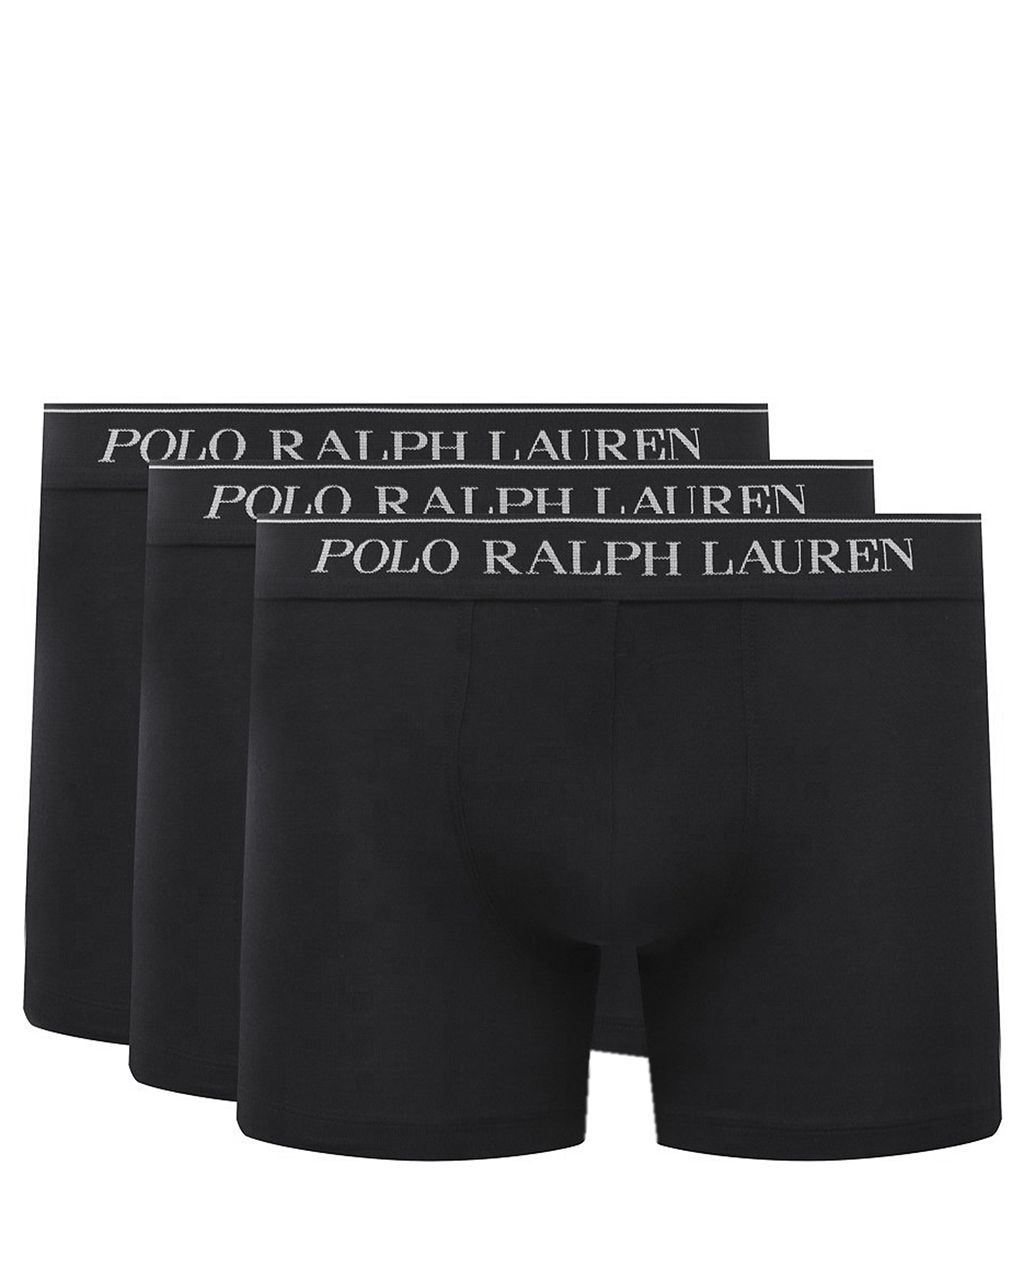 Polo Ralph Lauren - Boxershort Zwart 078605-001-L